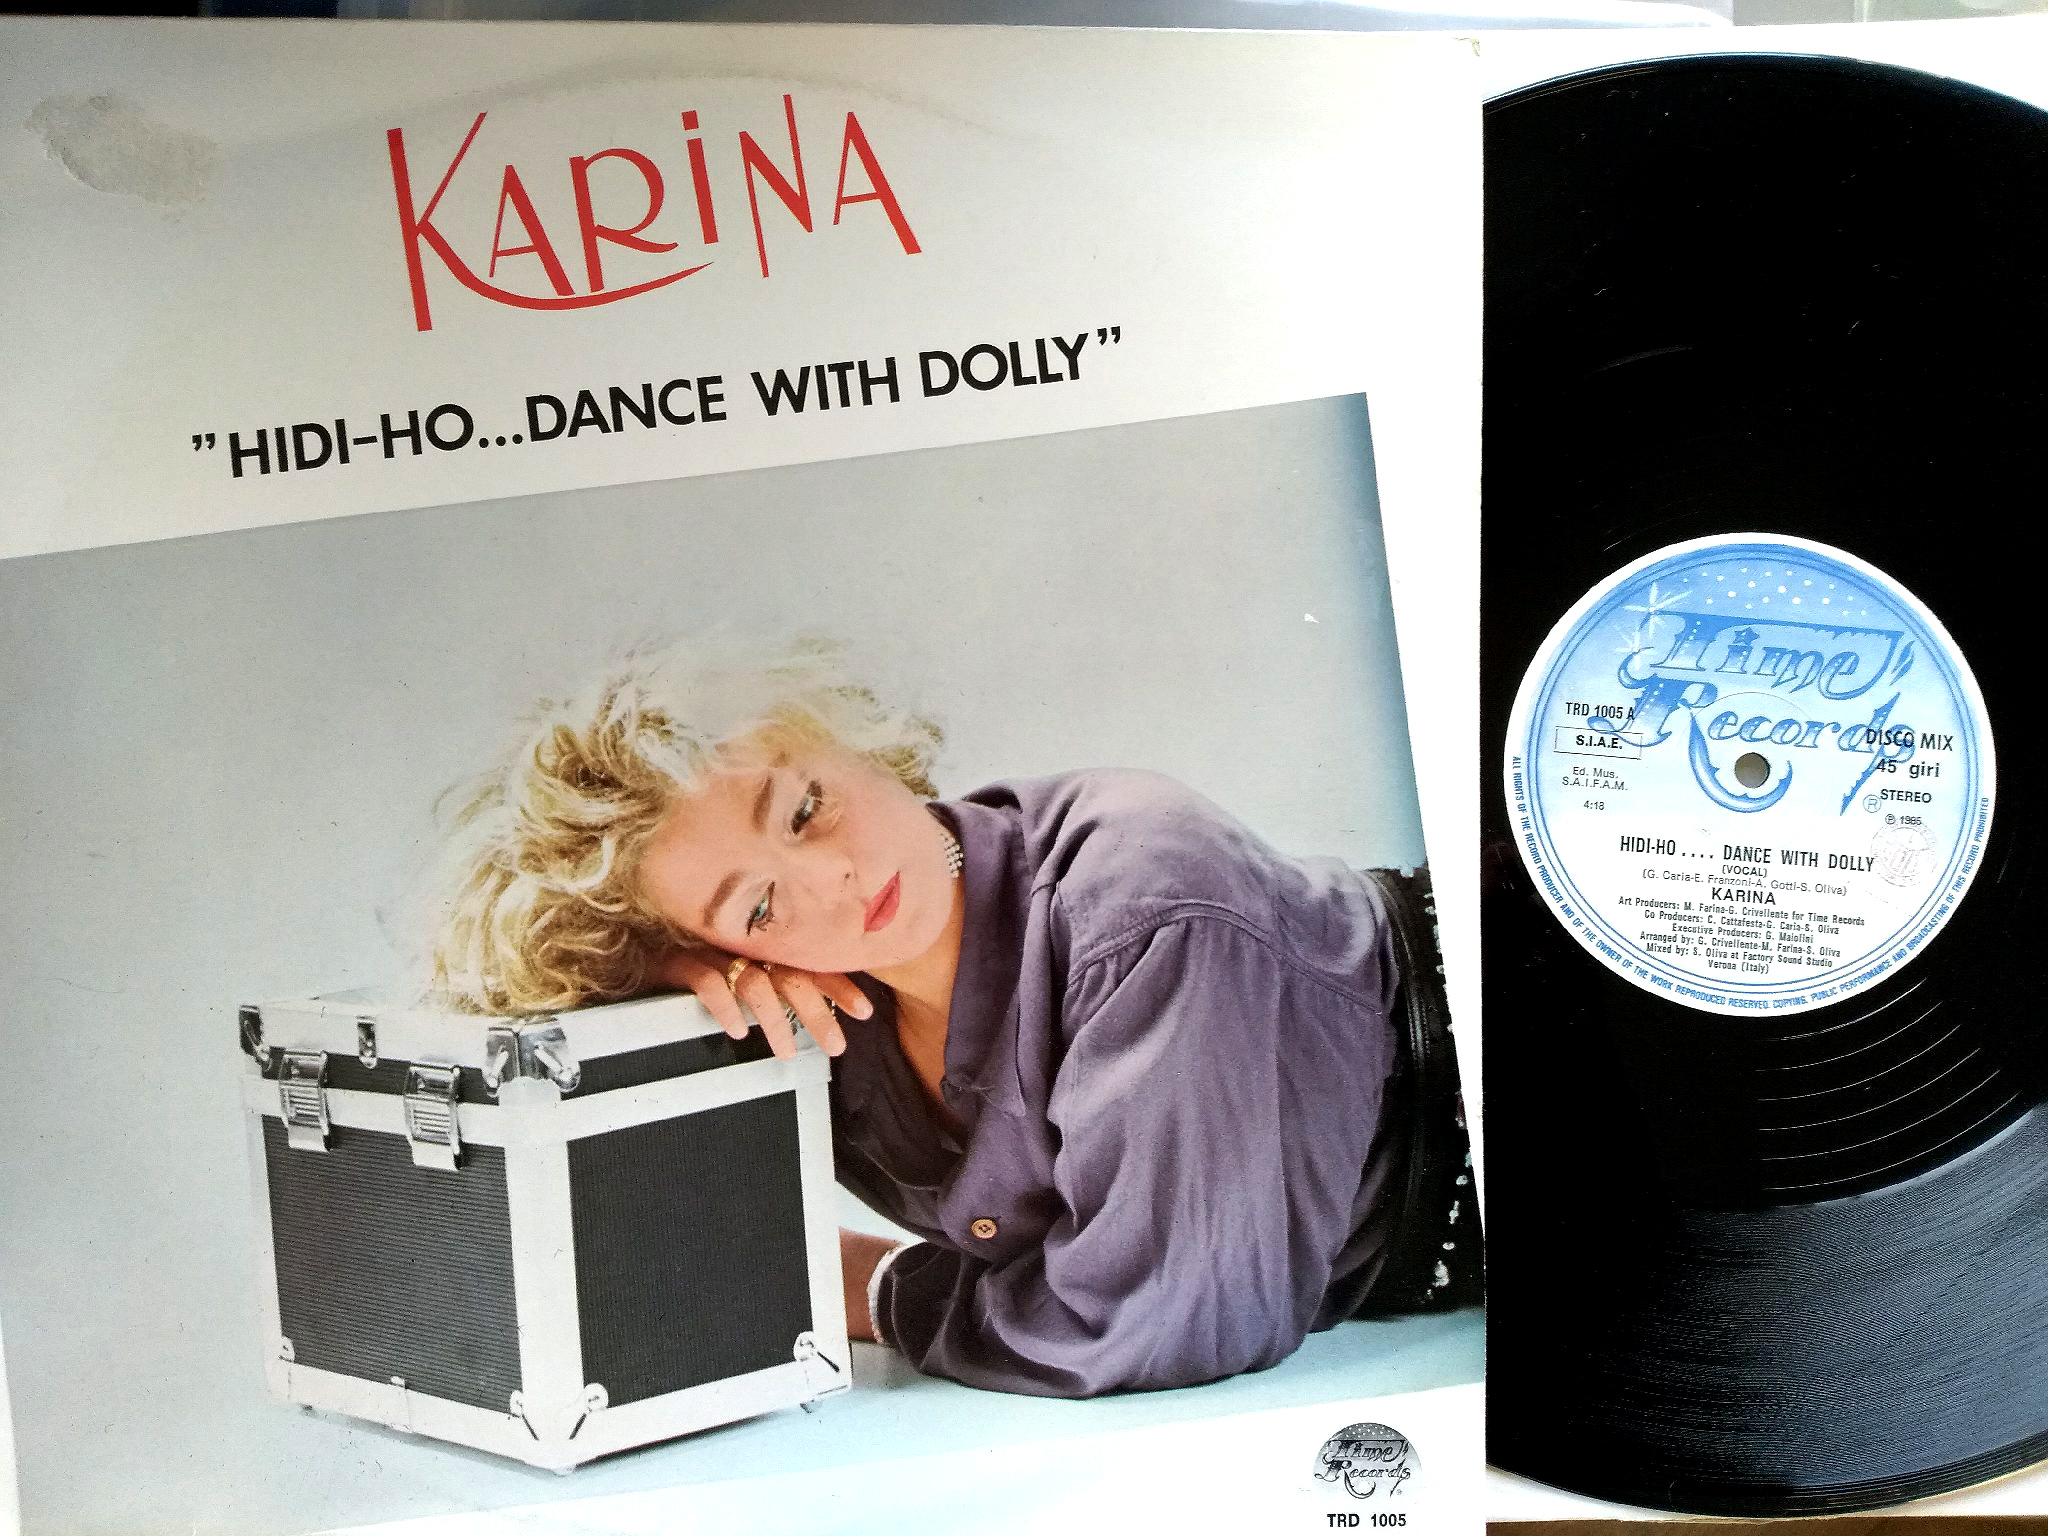 Karina - Hidi-Ho Dance With Dolly